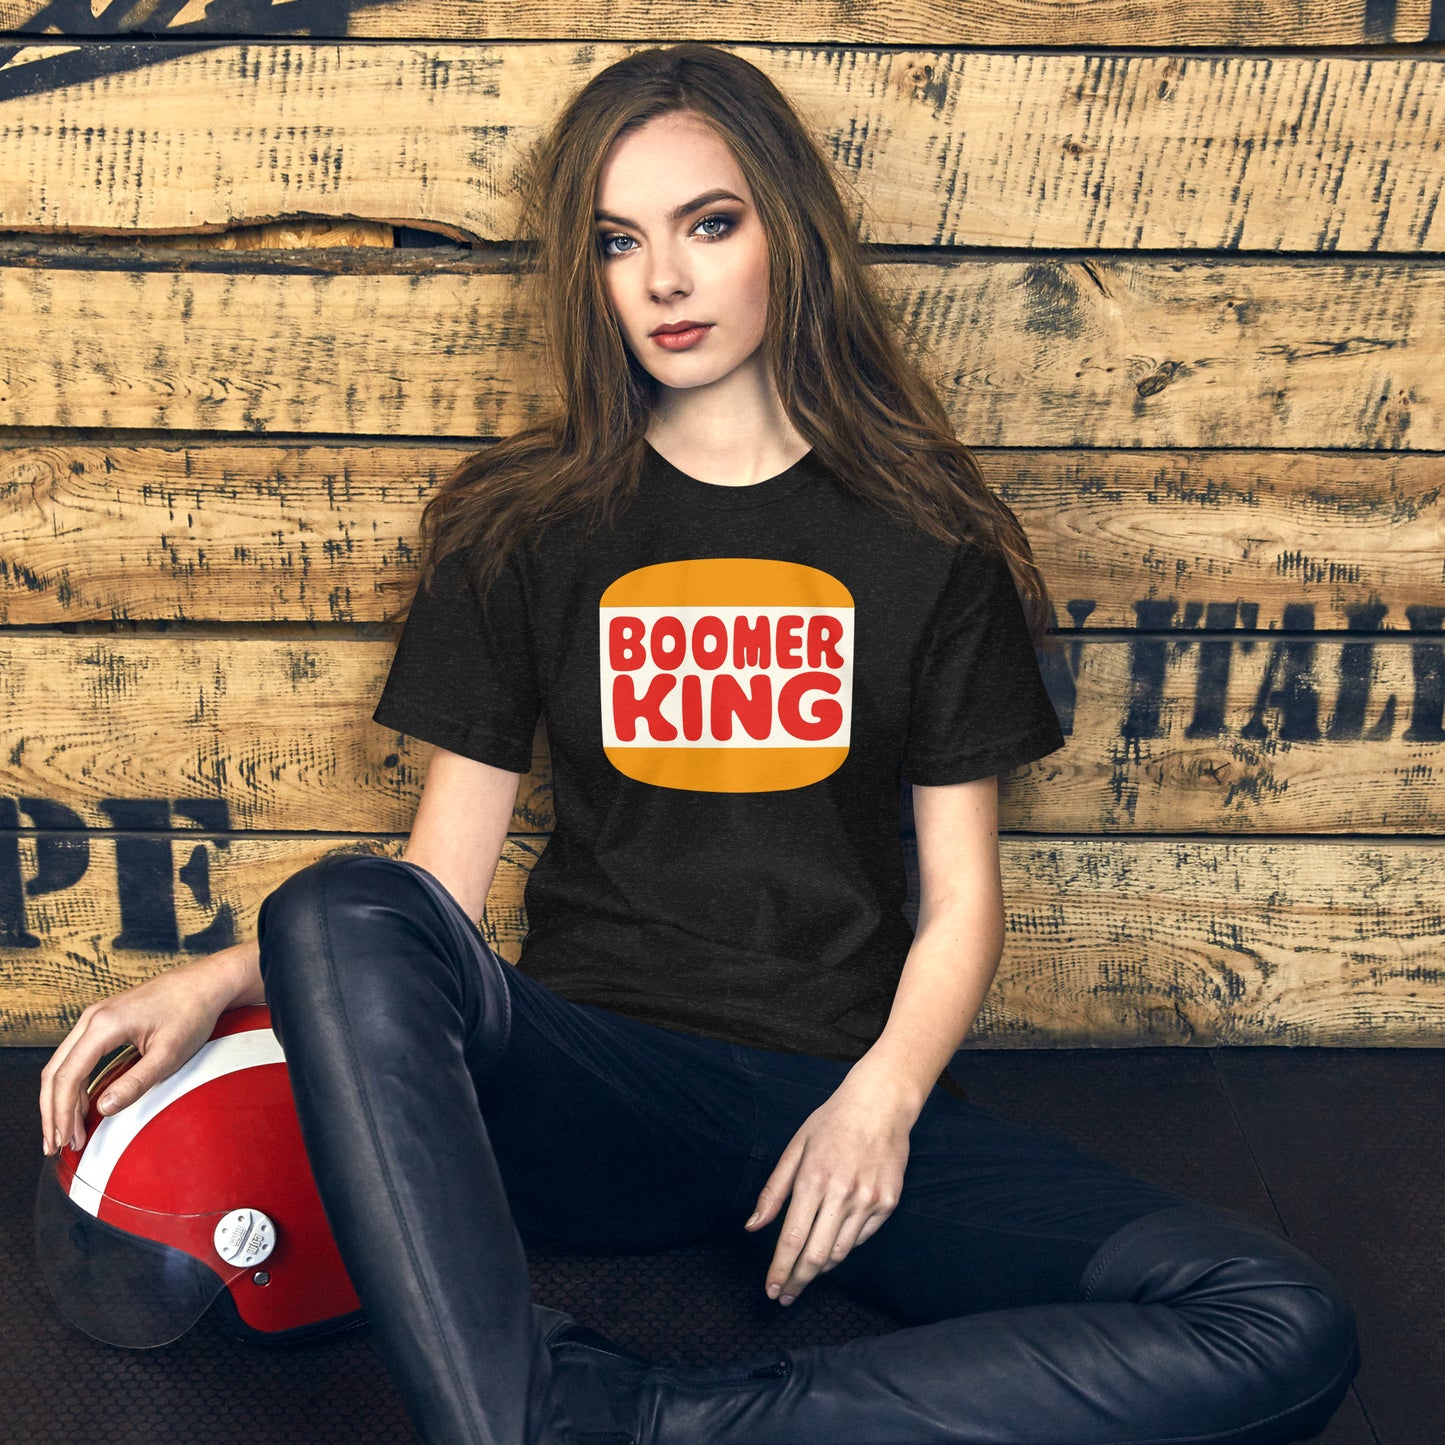 Boomer King t-shirt